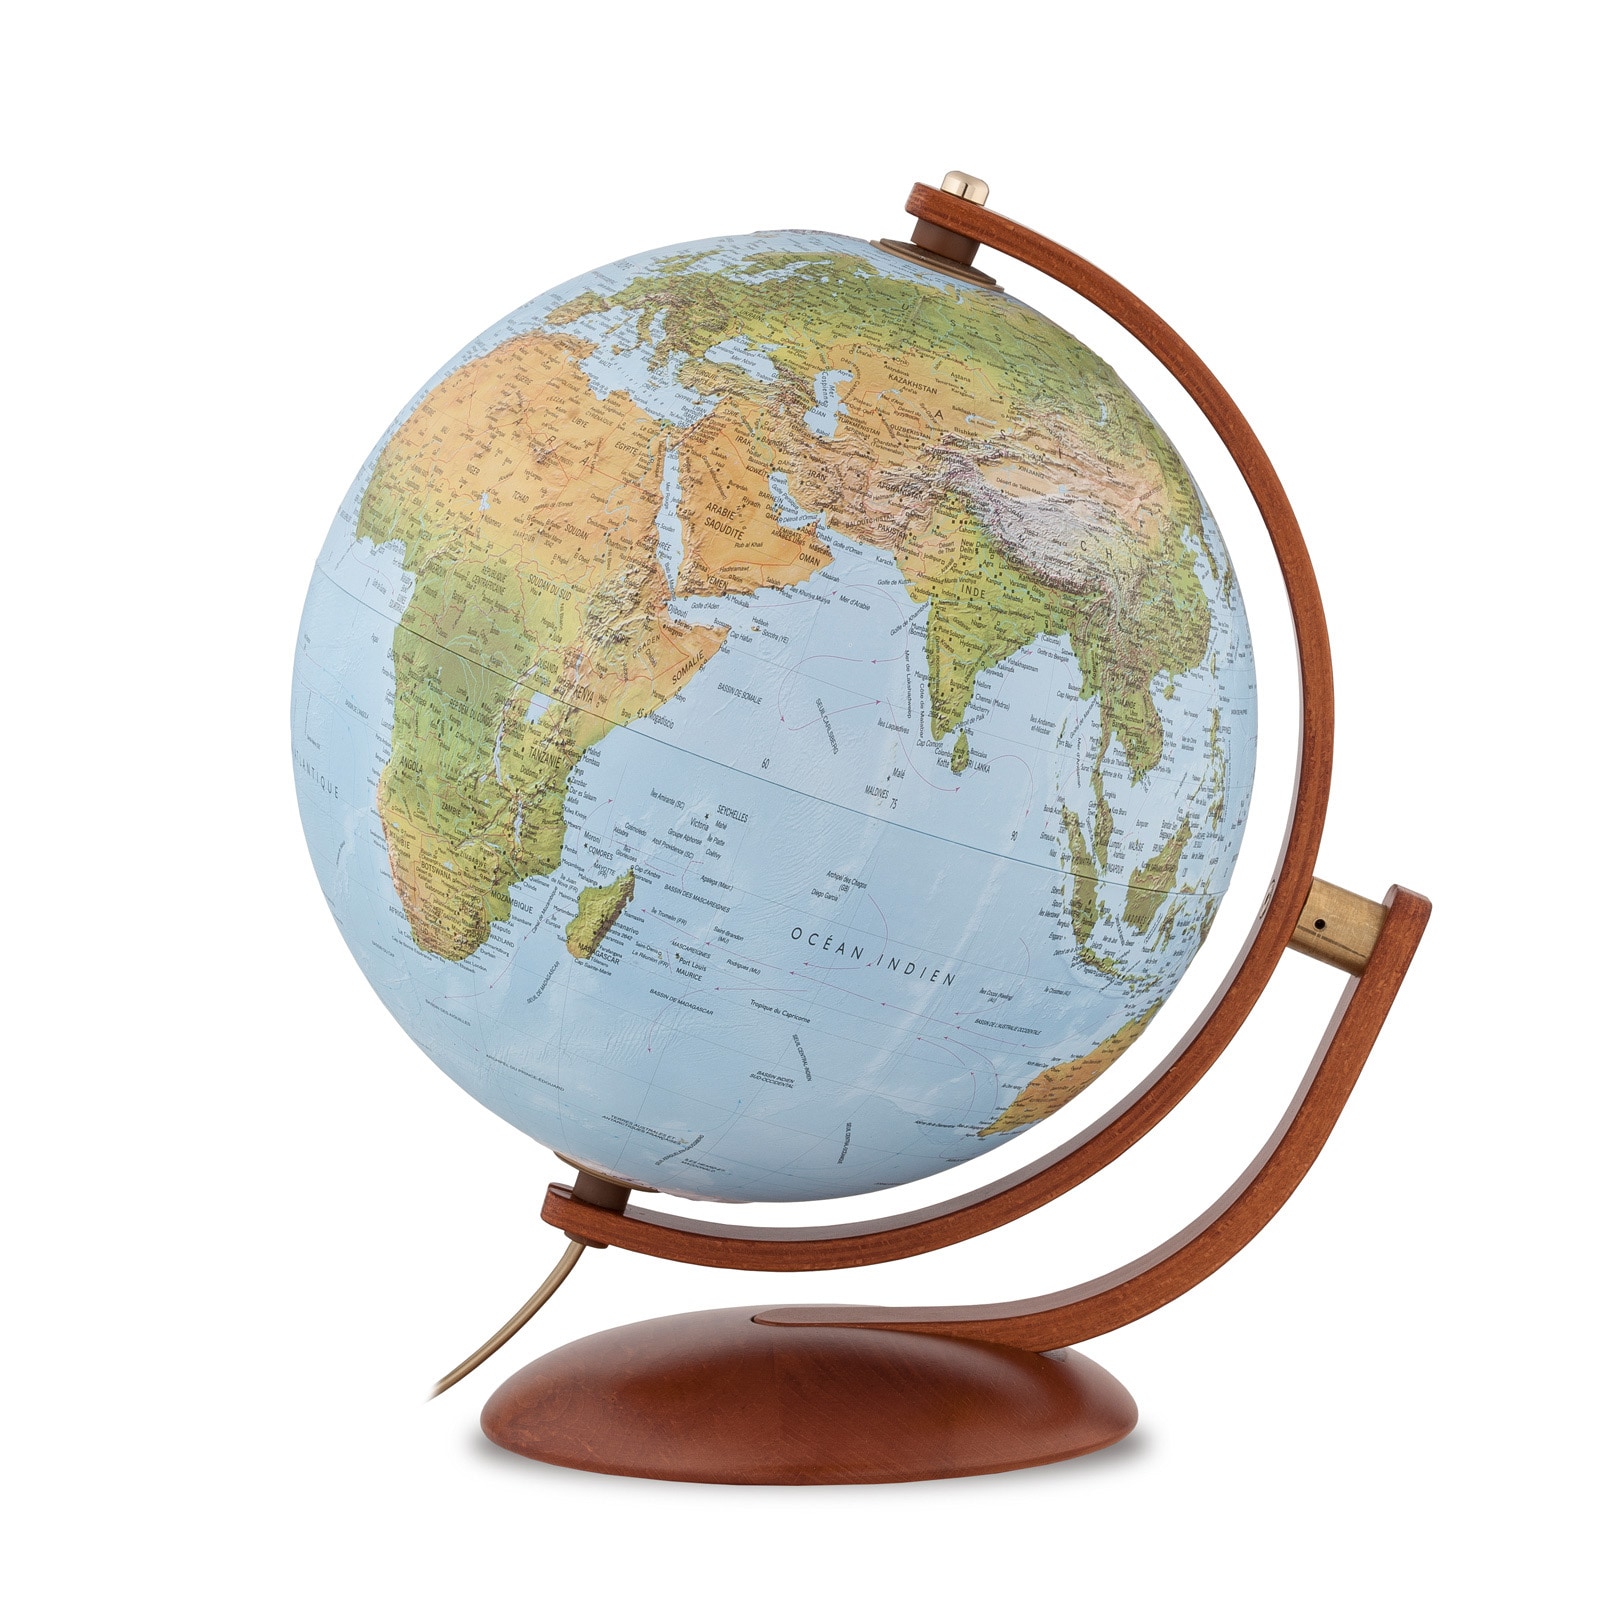 Globes terrestres décoratifs jusqu'à 70% de réduction